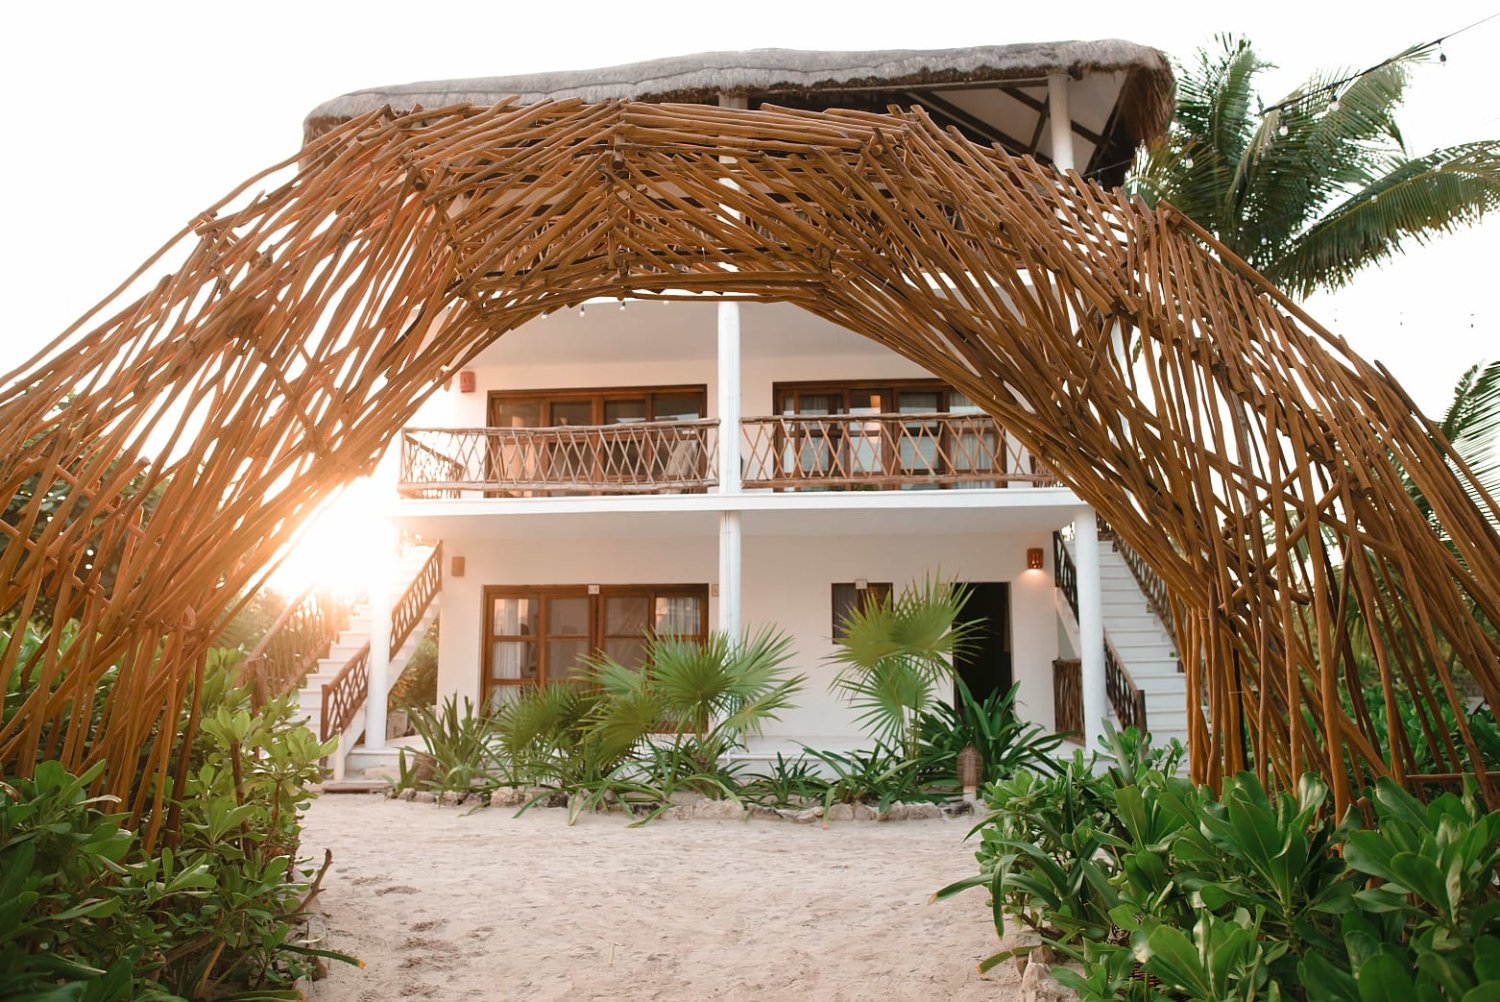 Unique beachfront hotels in Tulum, Mexico